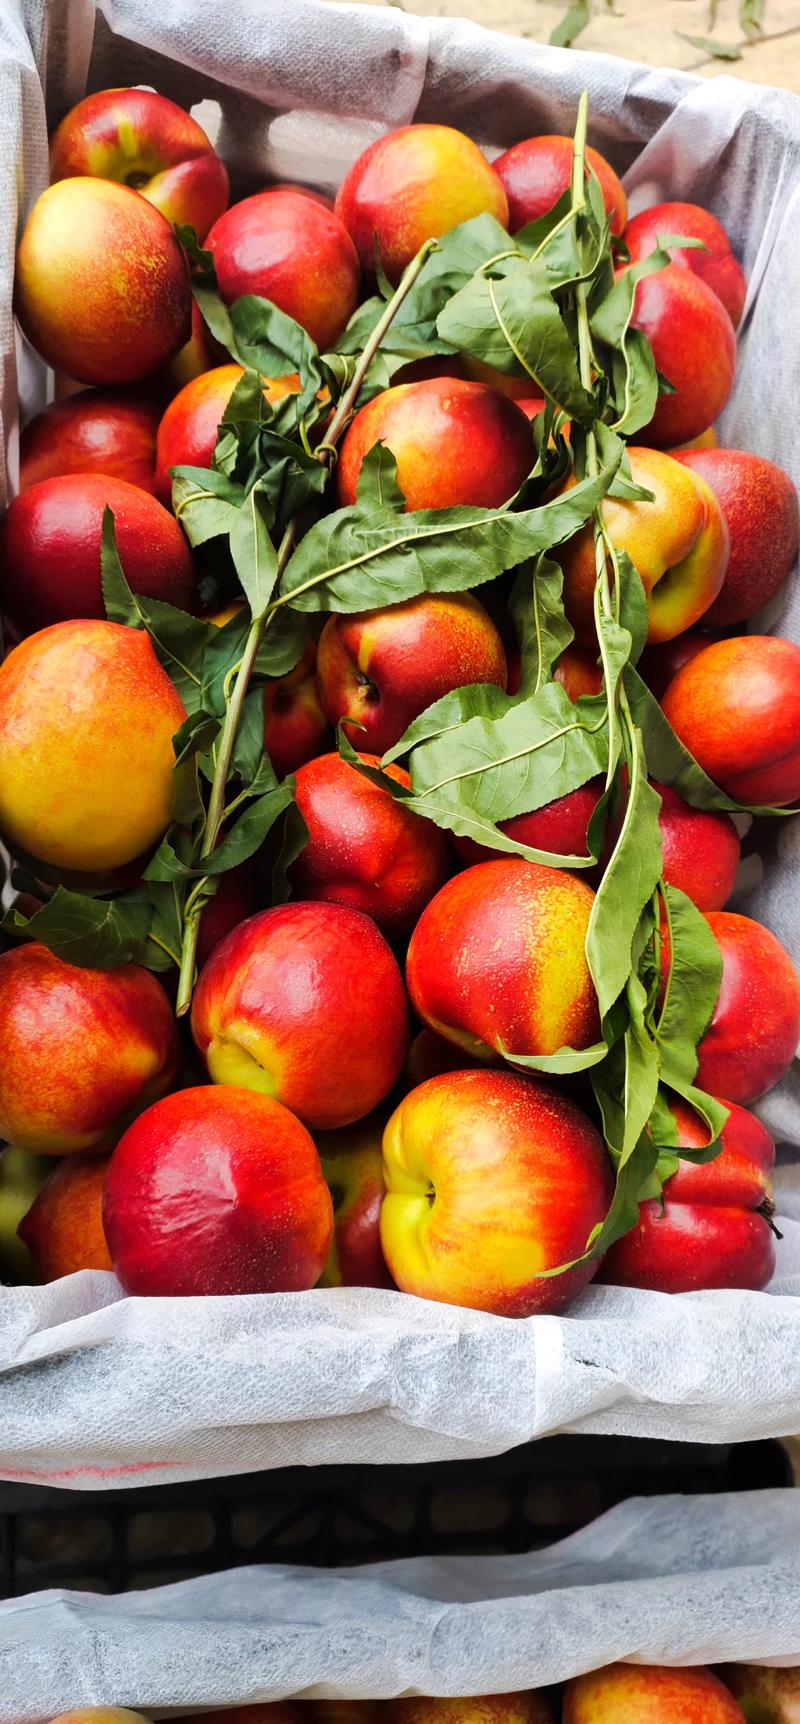 桃子油桃金雷曙光突围血桃新品种都慢慢上市了